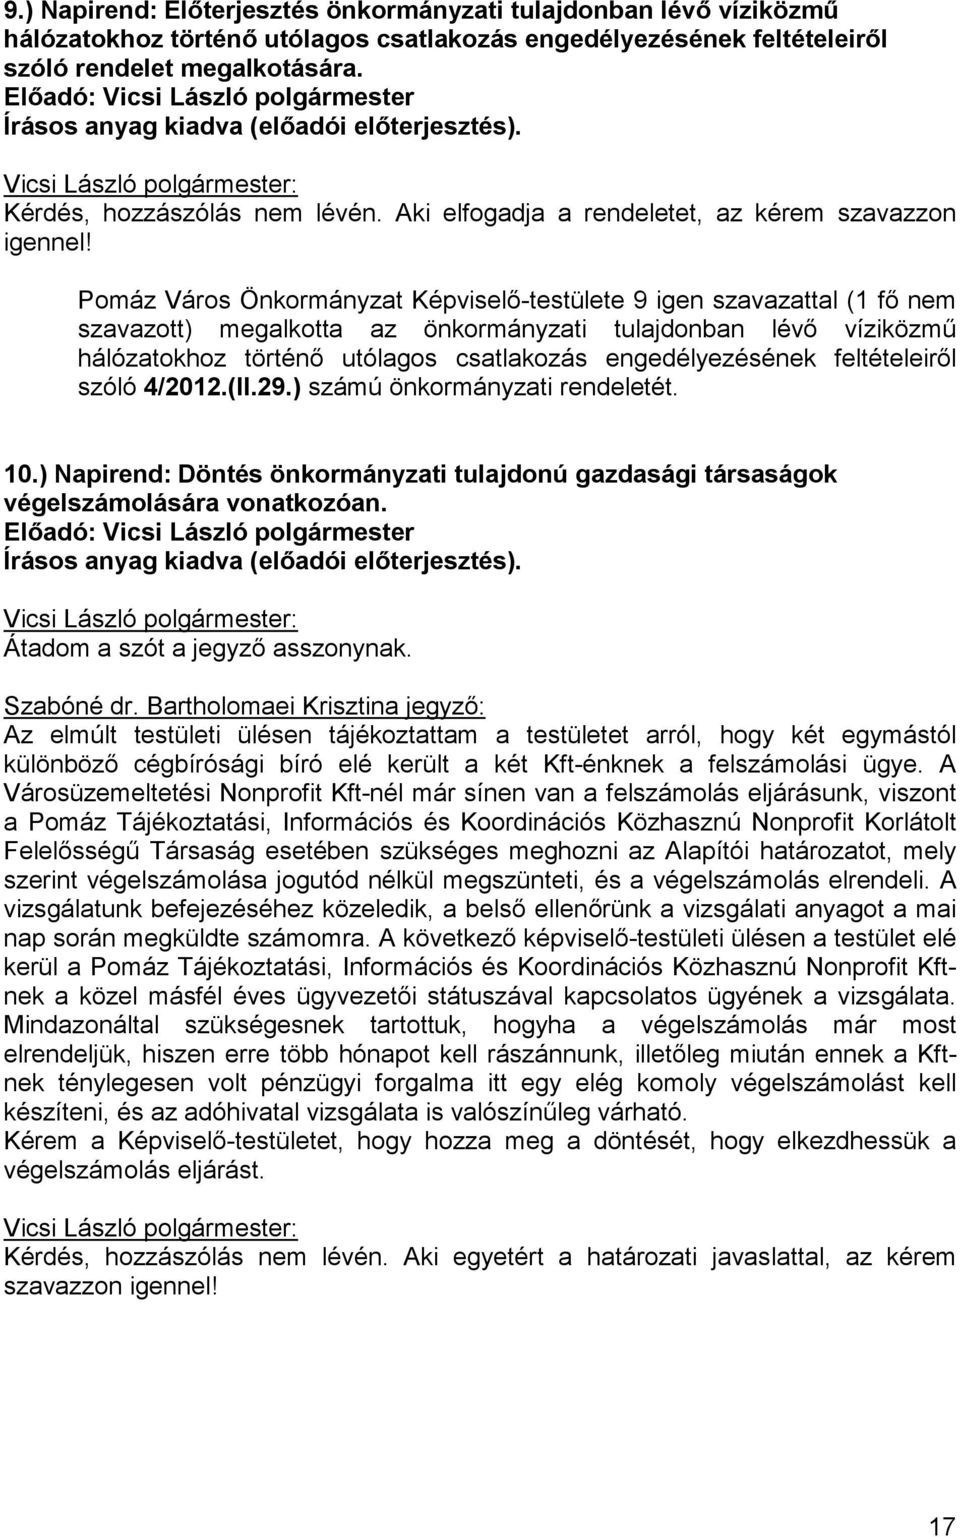 Pomáz Város Önkormányzat Képviselı-testülete 9 igen szavazattal (1 fı nem szavazott) megalkotta az önkormányzati tulajdonban lévı víziközmő hálózatokhoz történı utólagos csatlakozás engedélyezésének